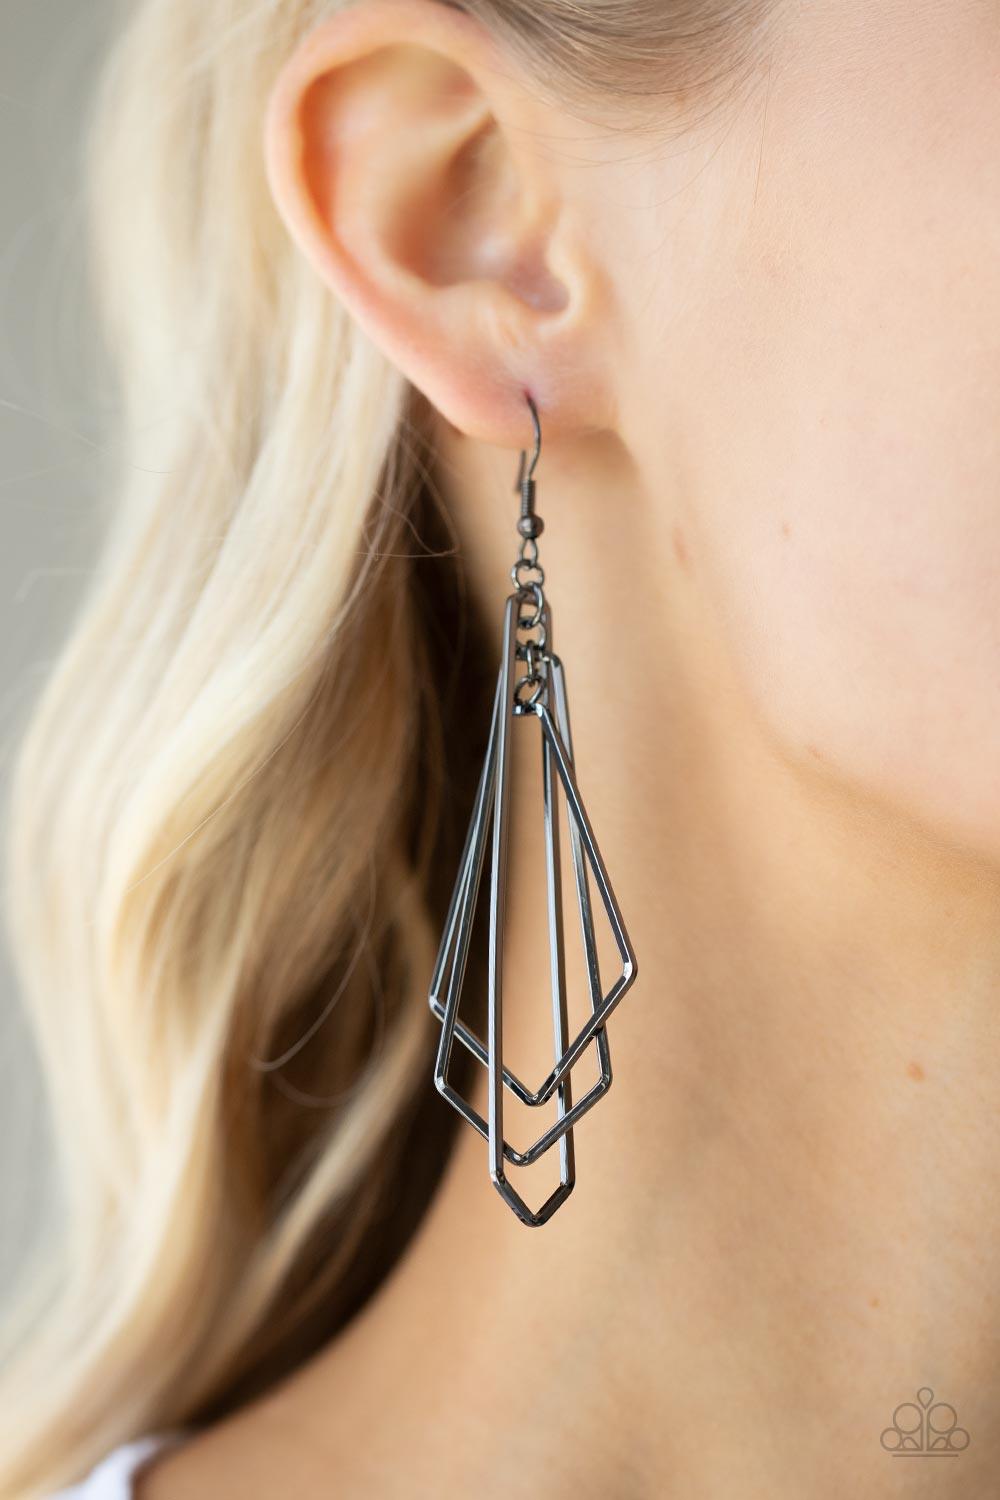 Shape Shifting Shimmer Black Earrings - Jewelry by Bretta